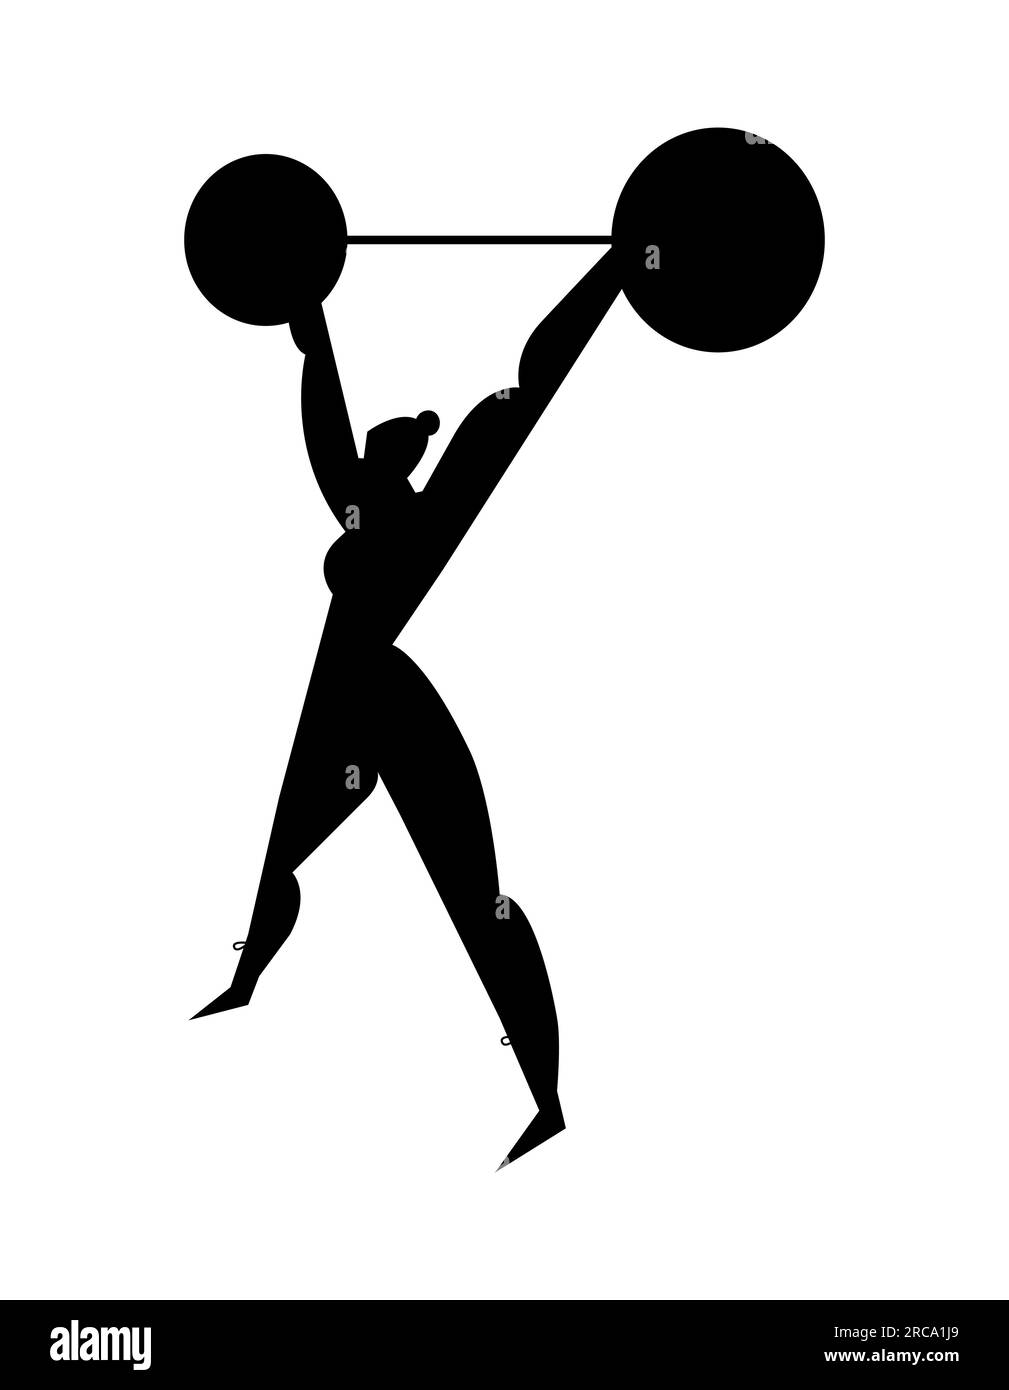 Schwarze Silhouette einer Athletikerin, die eine Langhantel hebt. Gym-Workout mit Sport-Langhantel, Gewichtheben und Bodybuilding, gesunder Lebensstil und fitne Stock Vektor